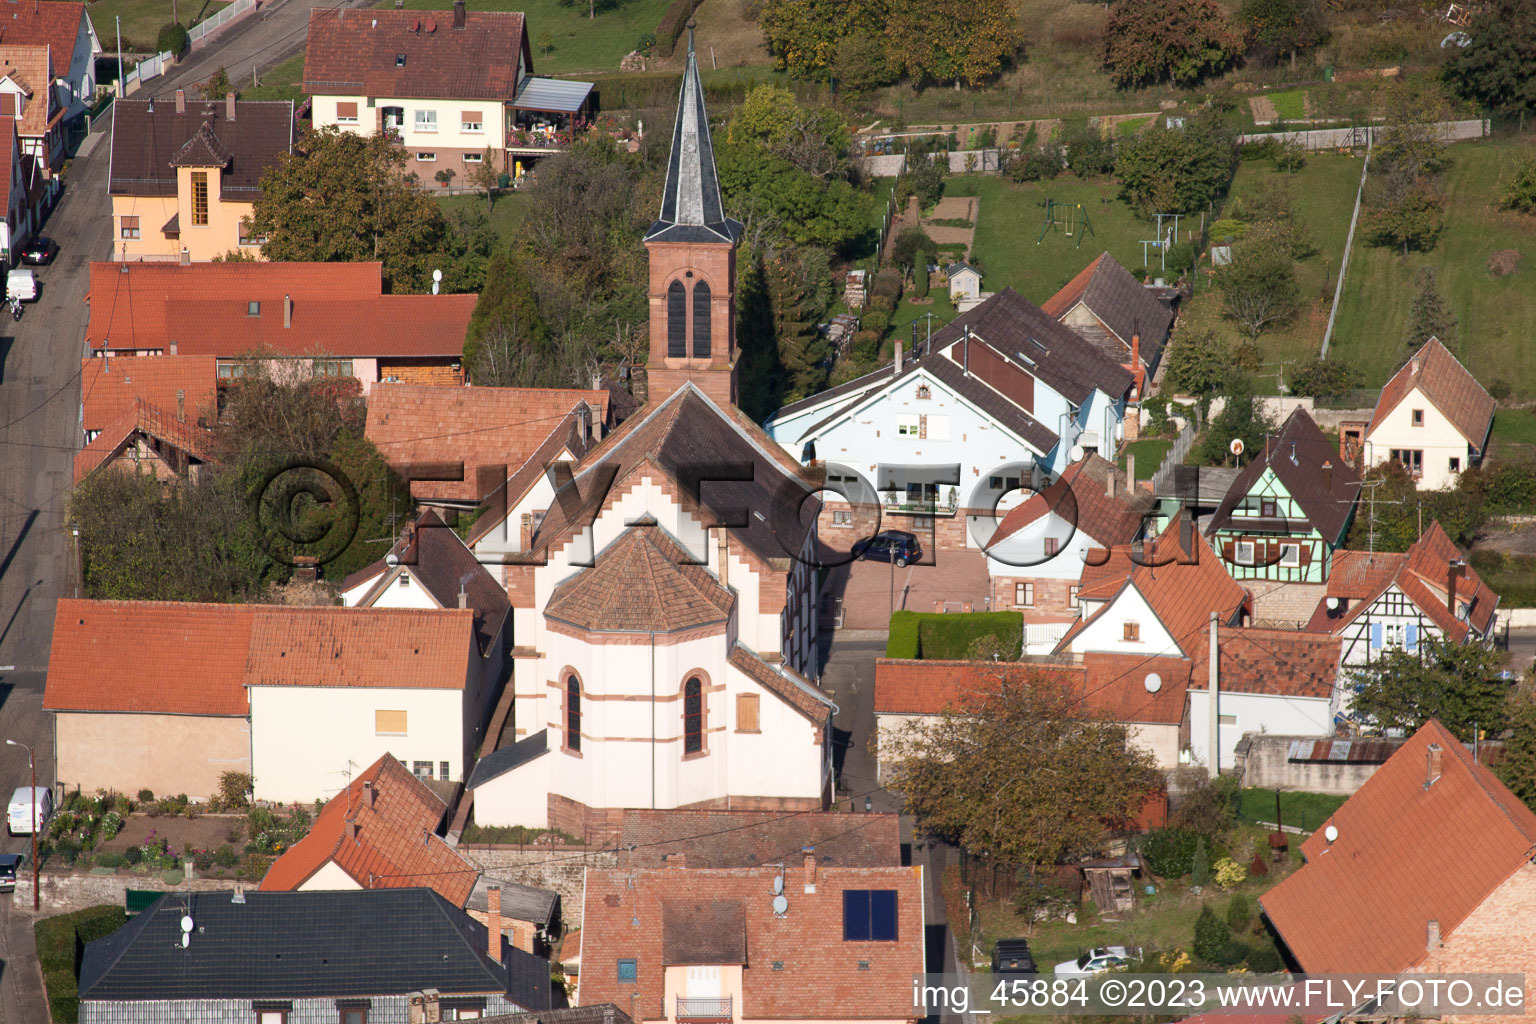 Gœrsdorf dans le département Bas Rhin, France du point de vue du drone